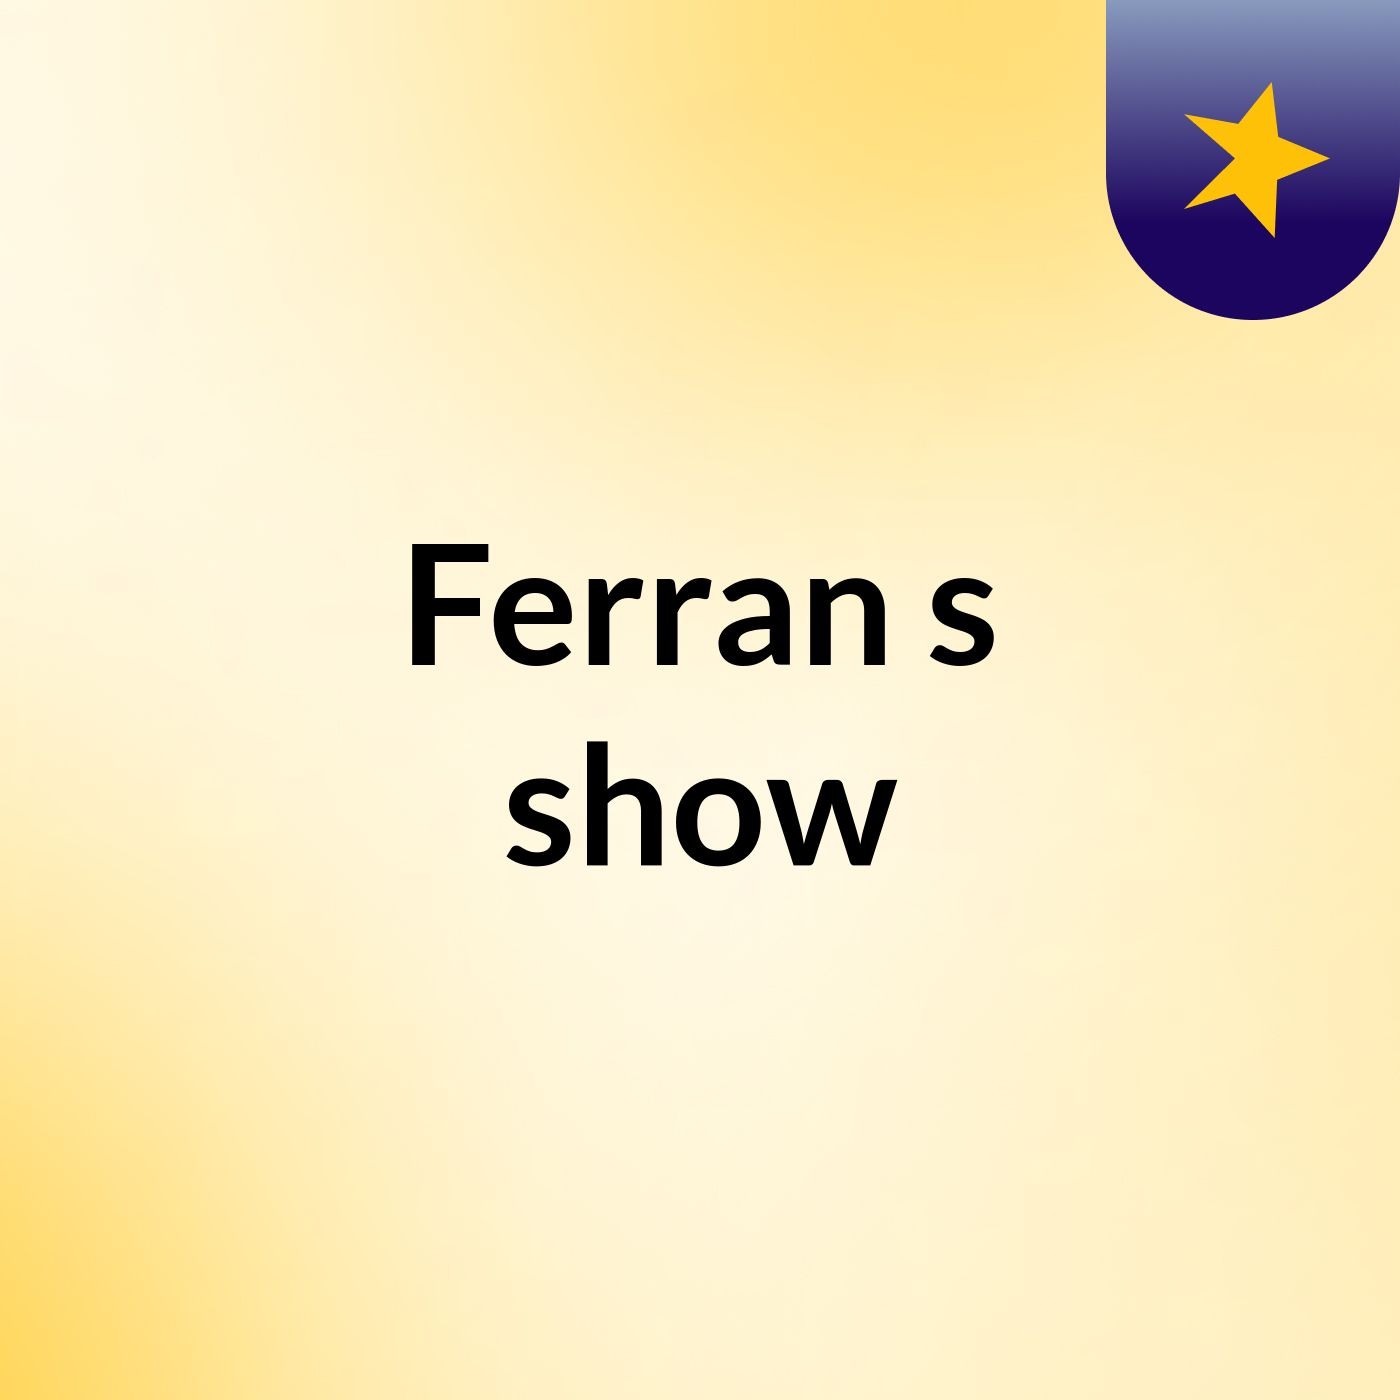 Ferran's show